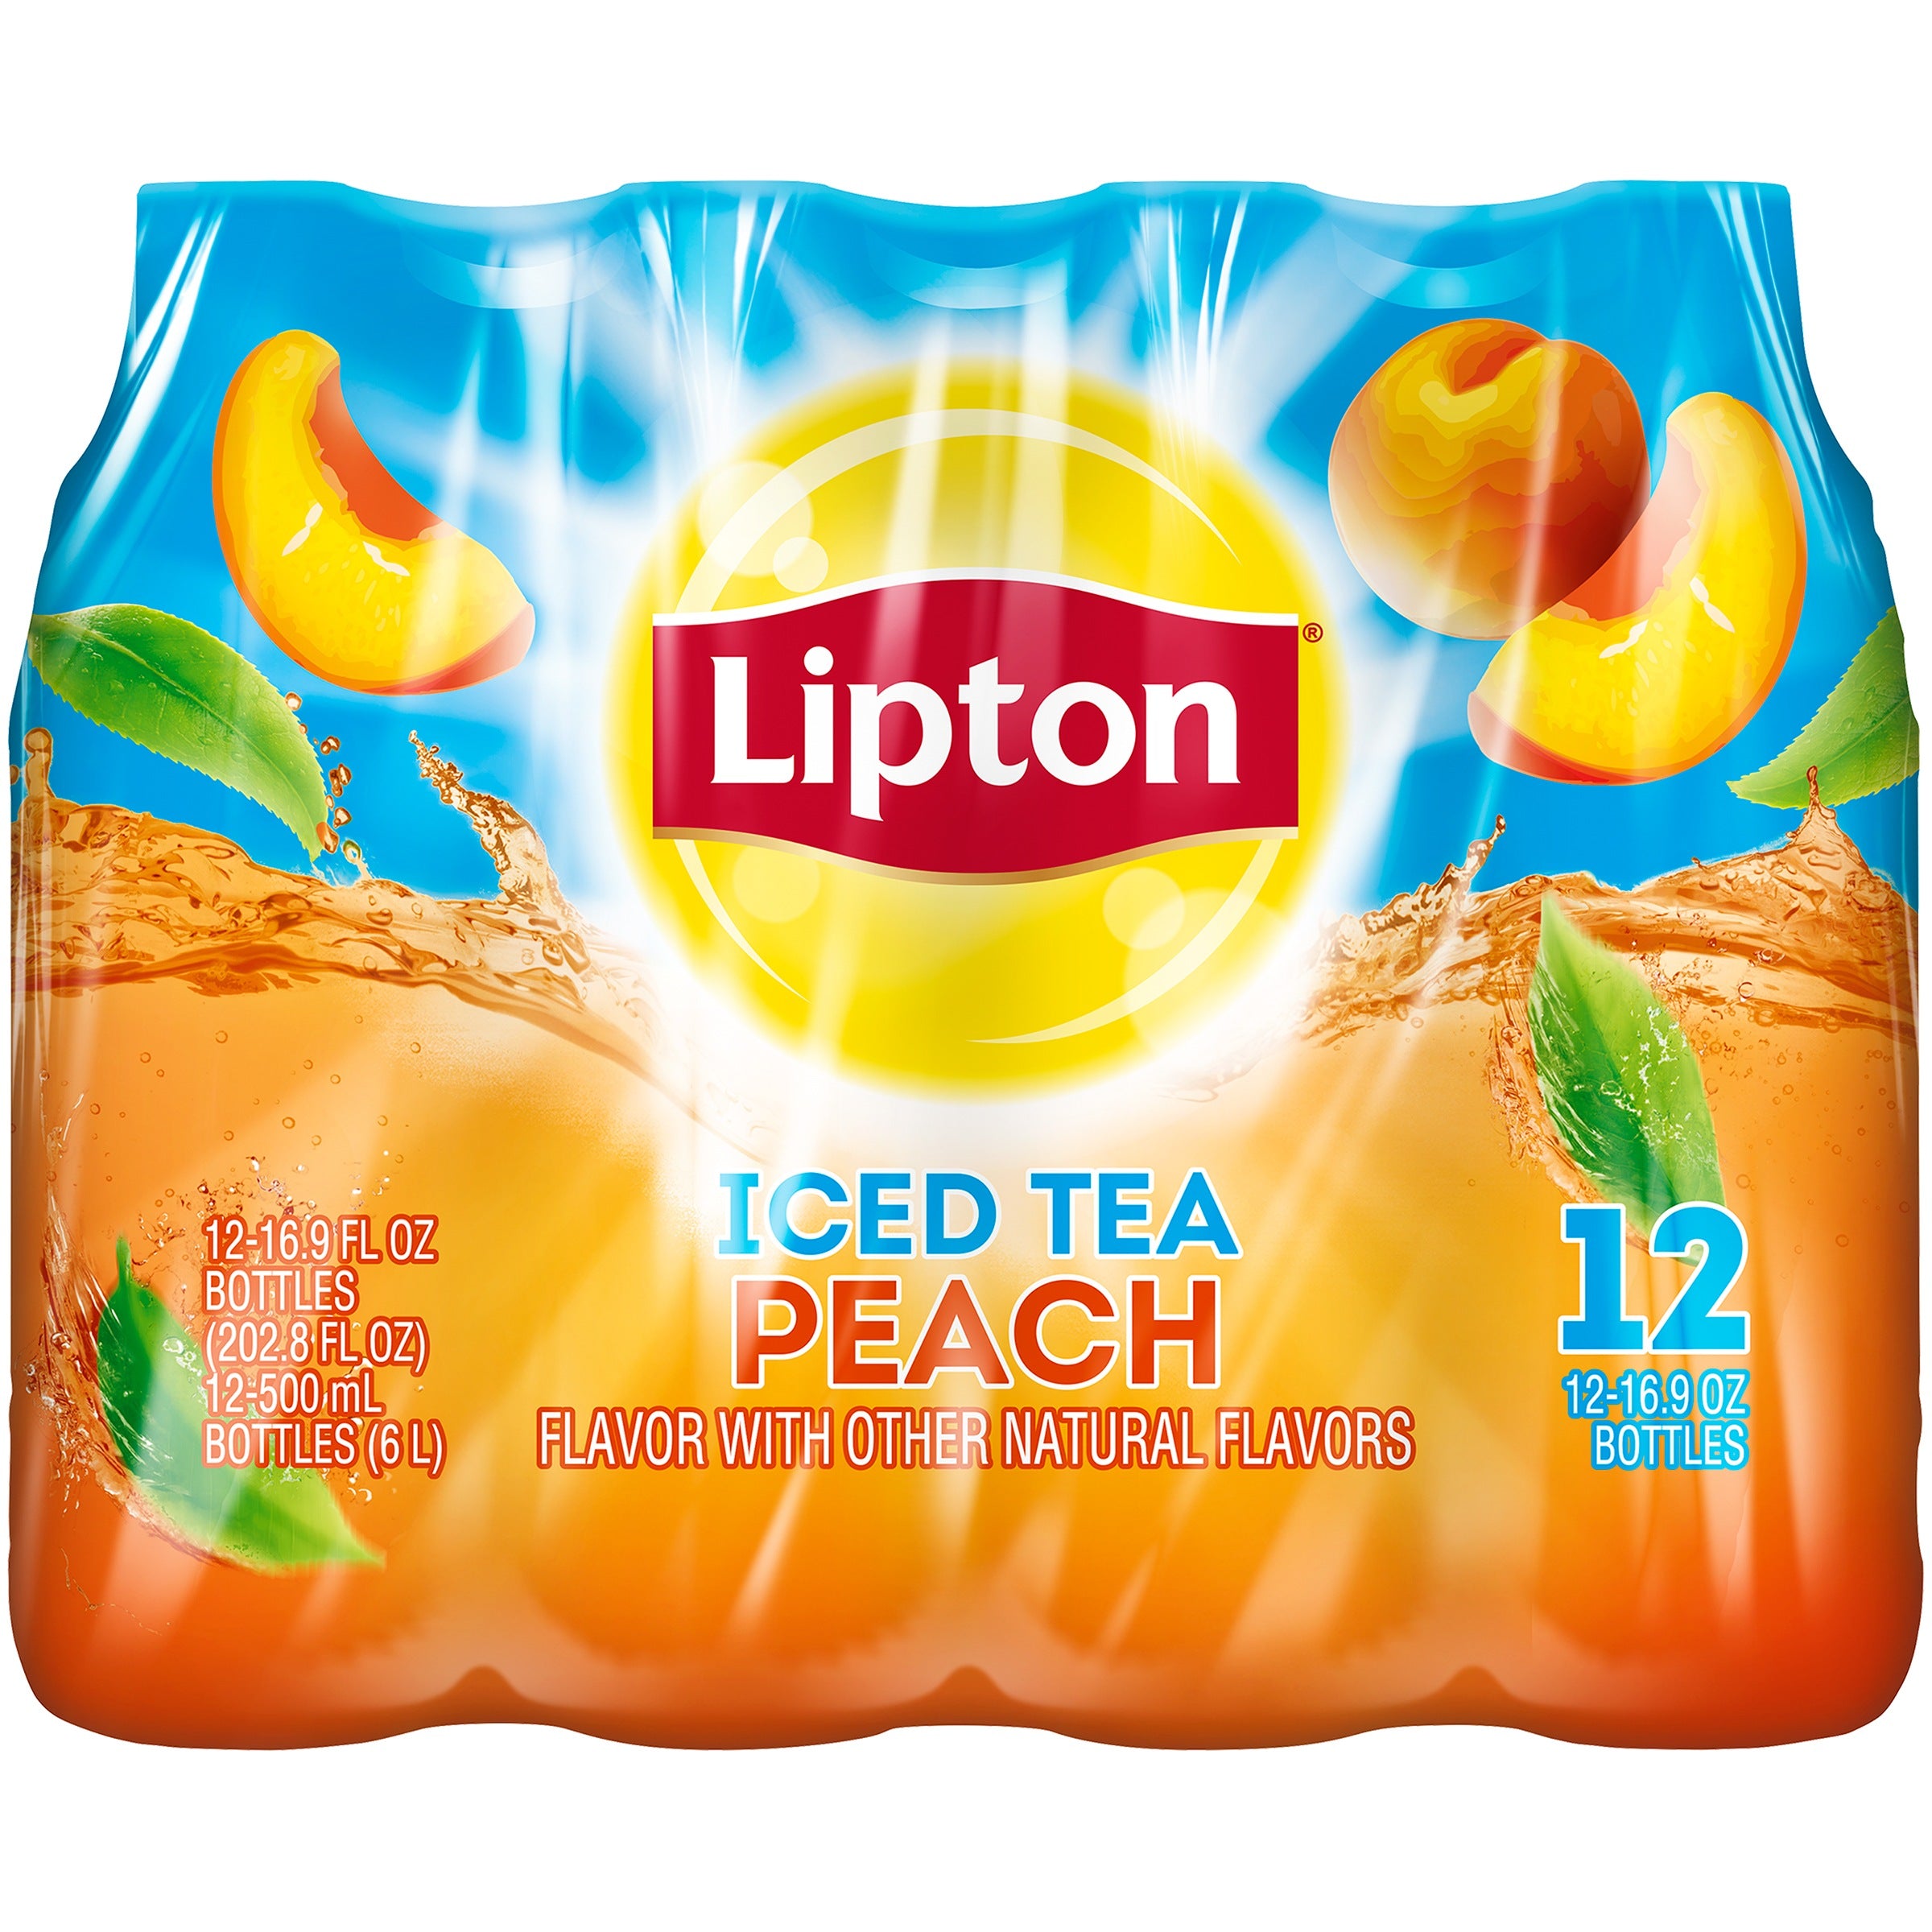 Lipton Peach Iced Tea, 16.9 Fl Oz, (12 bottles)